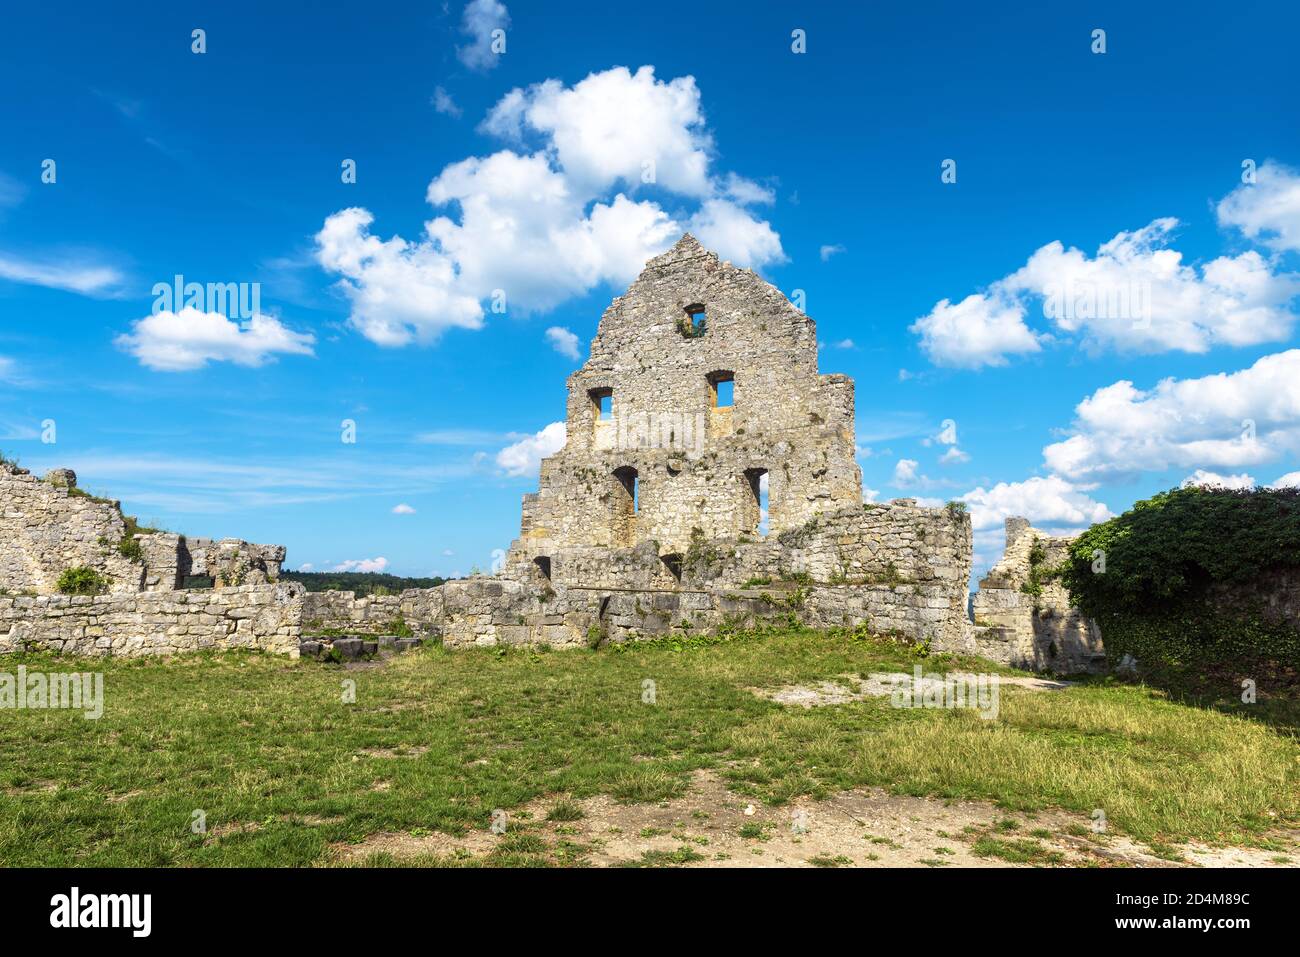 Château de Hohenurach dans la vieille ville de Bad Urach, Allemagne. Les ruines de ce château médiéval sont un point de repère du Bade-Wurtemberg. Paysage avec abandonné allemand c Banque D'Images